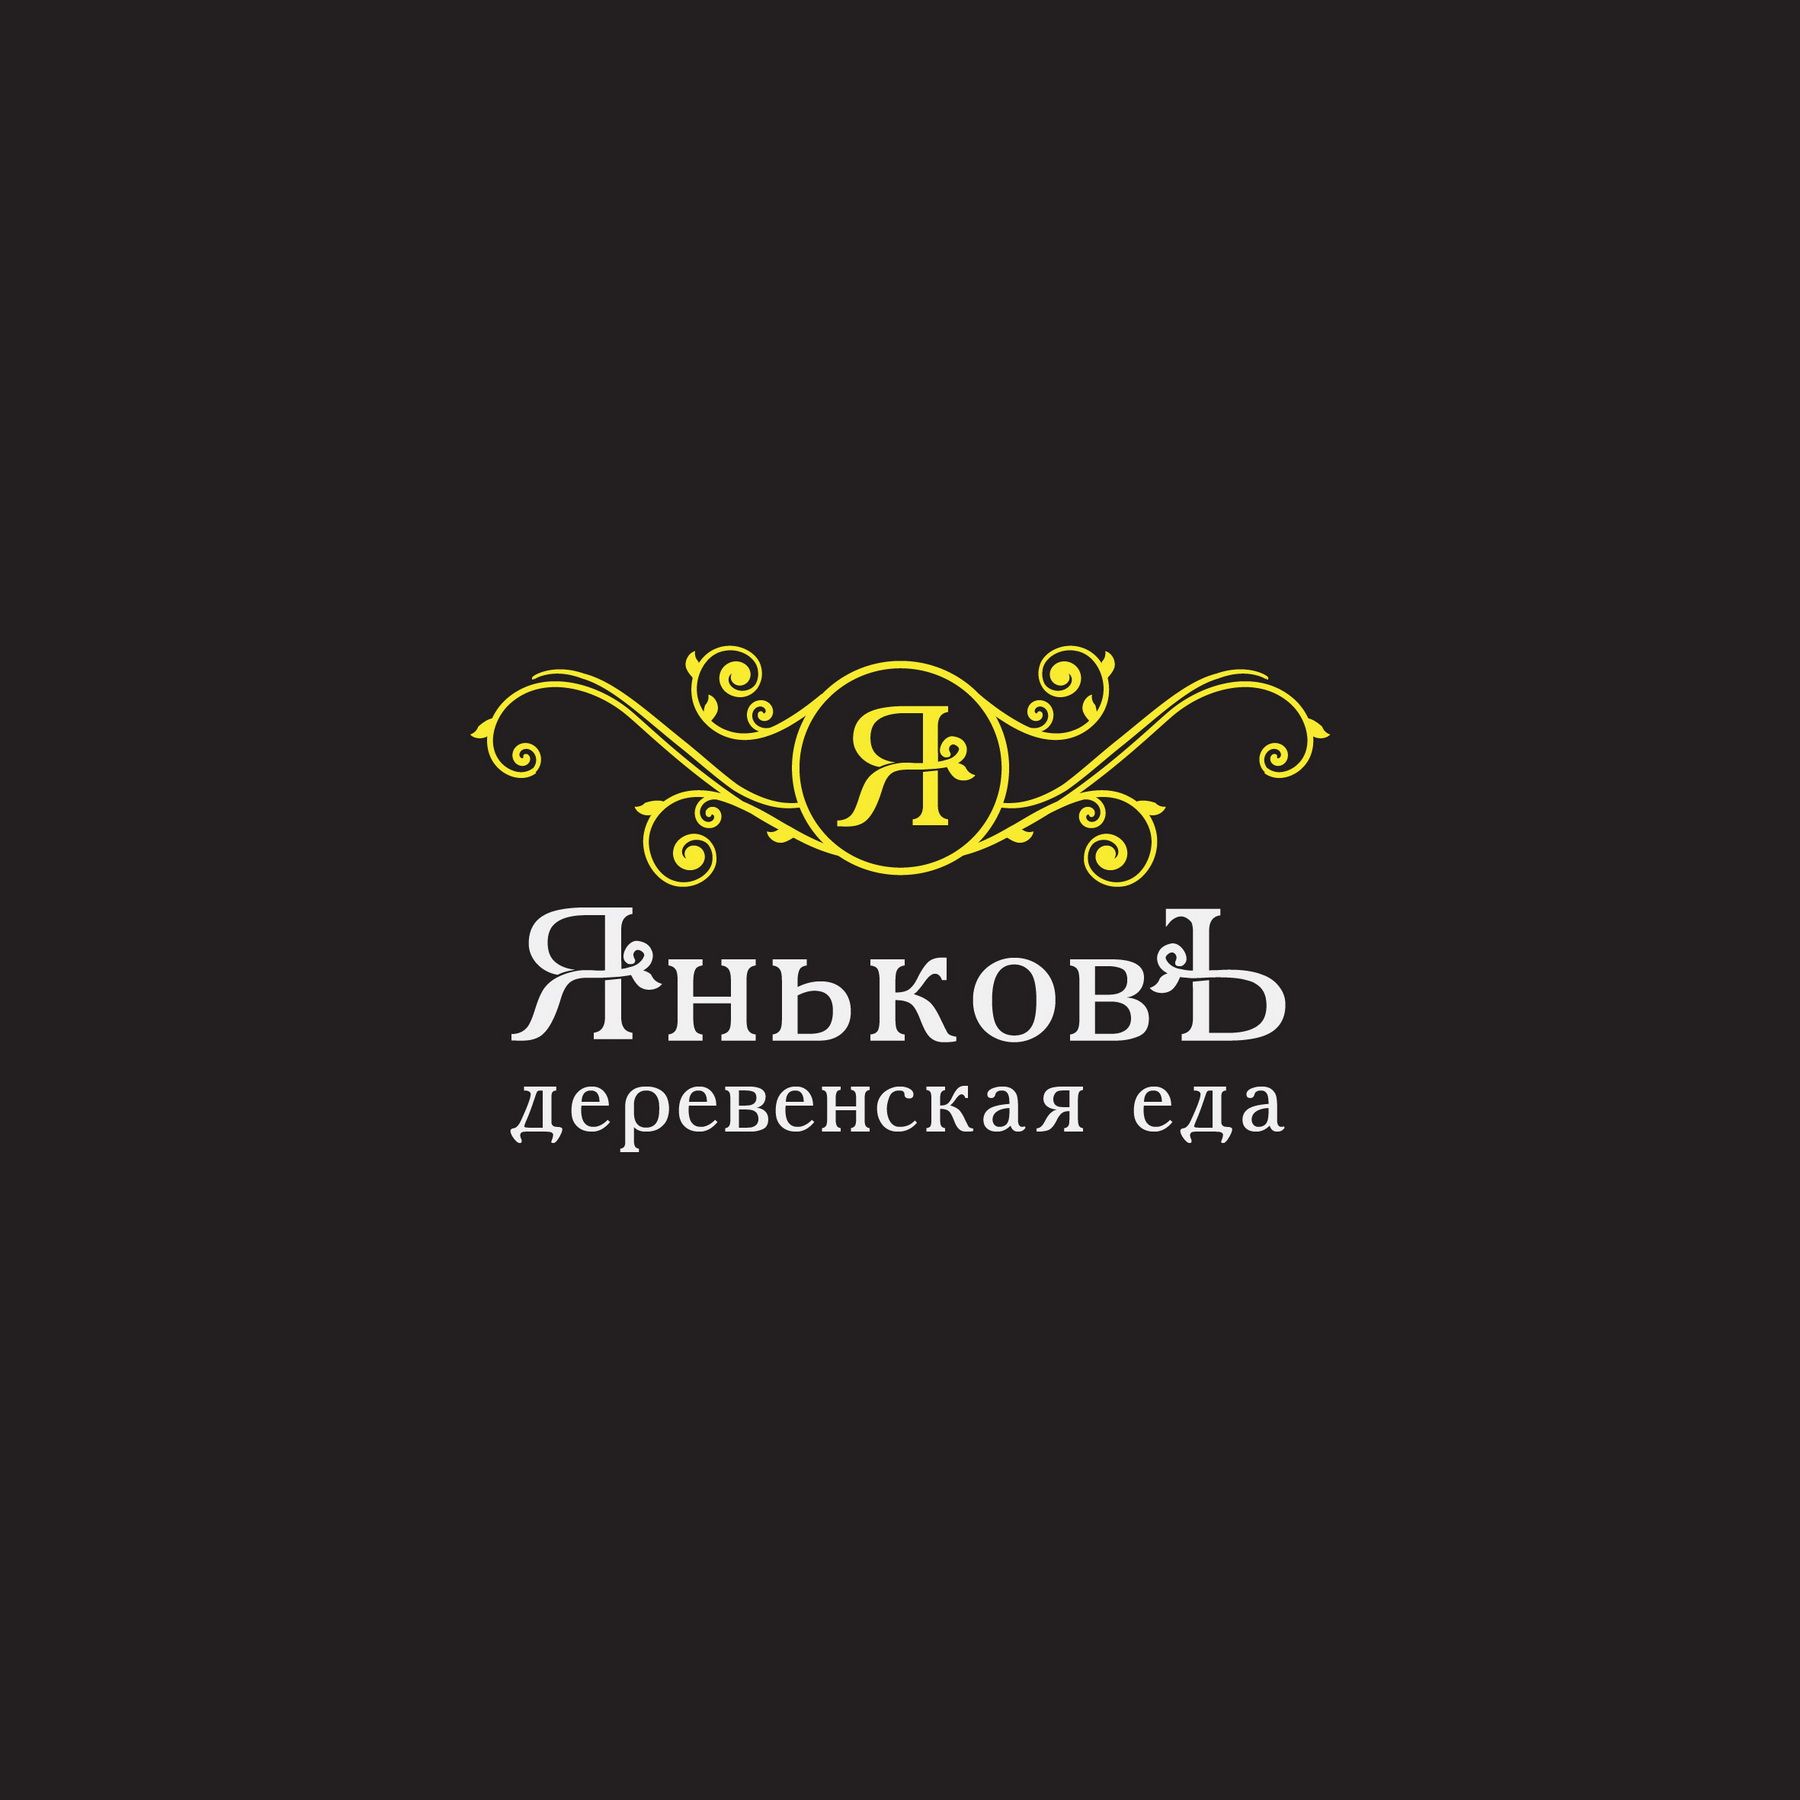 Лого и фирм.стиль для Деревенская еда - ЯньковЪ - дизайнер Korish